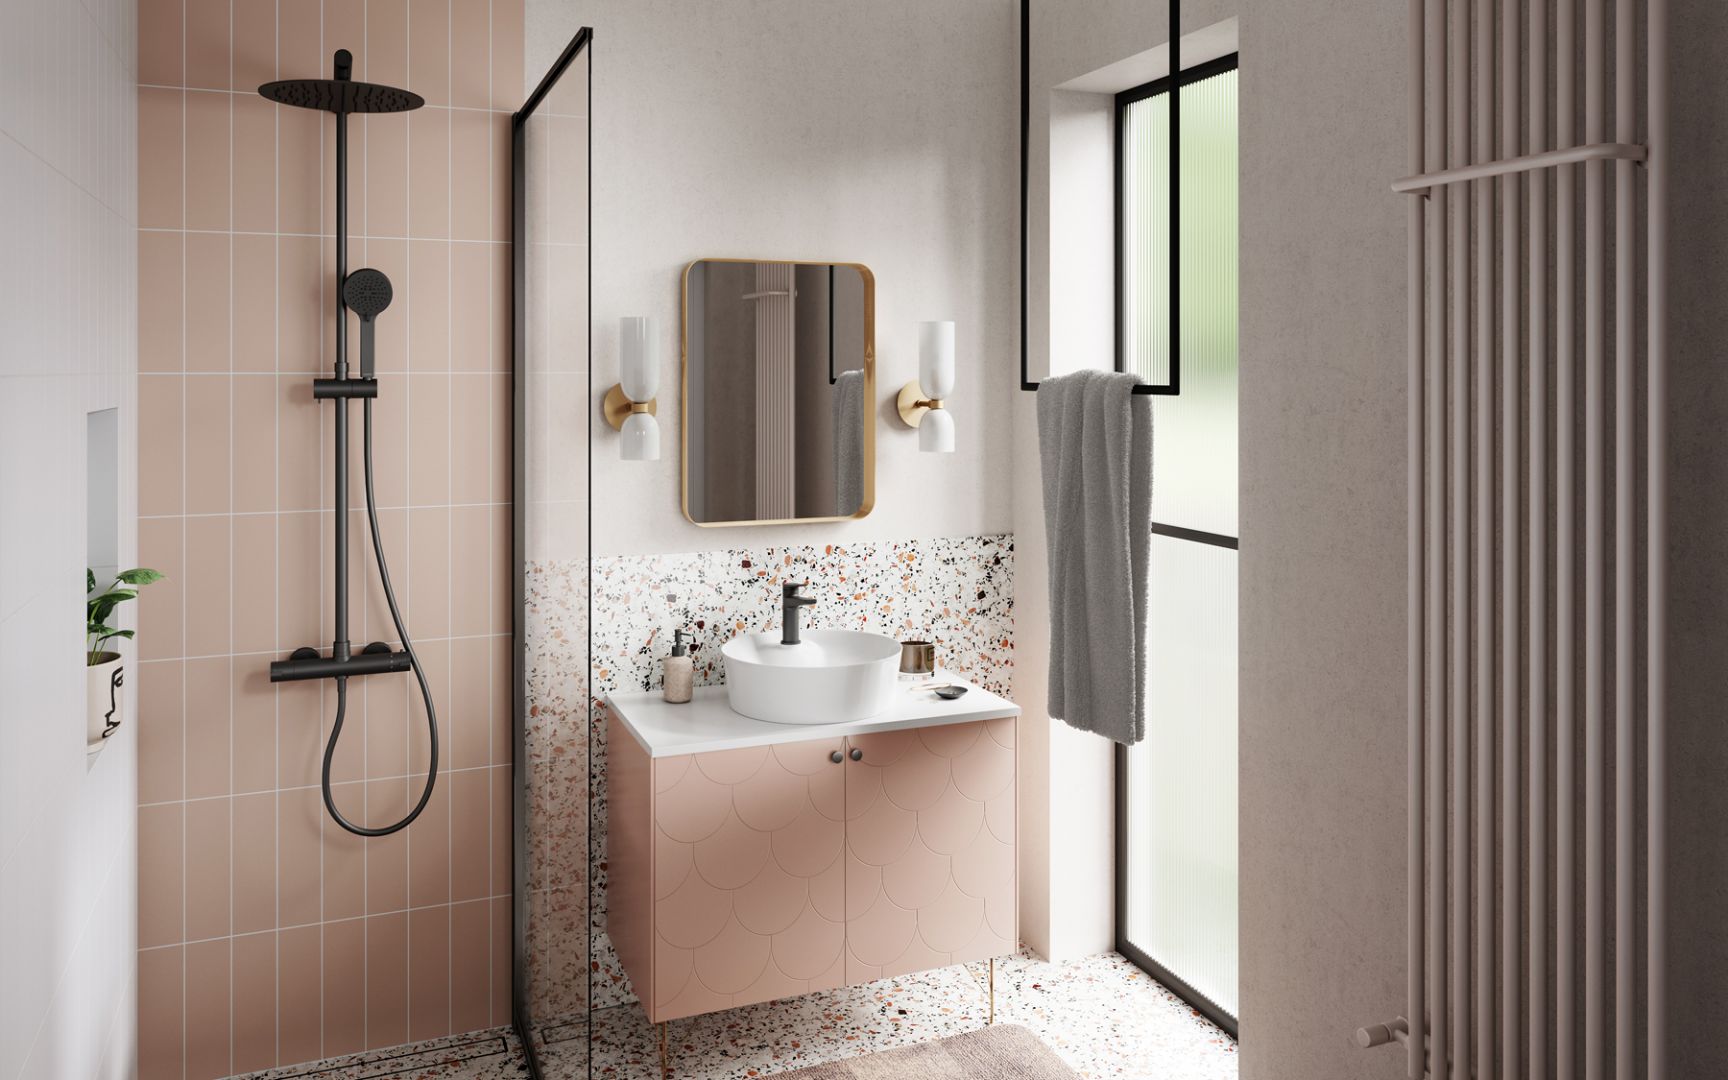 W aranżacji łazienki łączącej biel z pudrowym różem płytki w strefie prysznica są prostokątne, podłużne, ułożone pionowo aż po sam sufit. Fot. Ferro